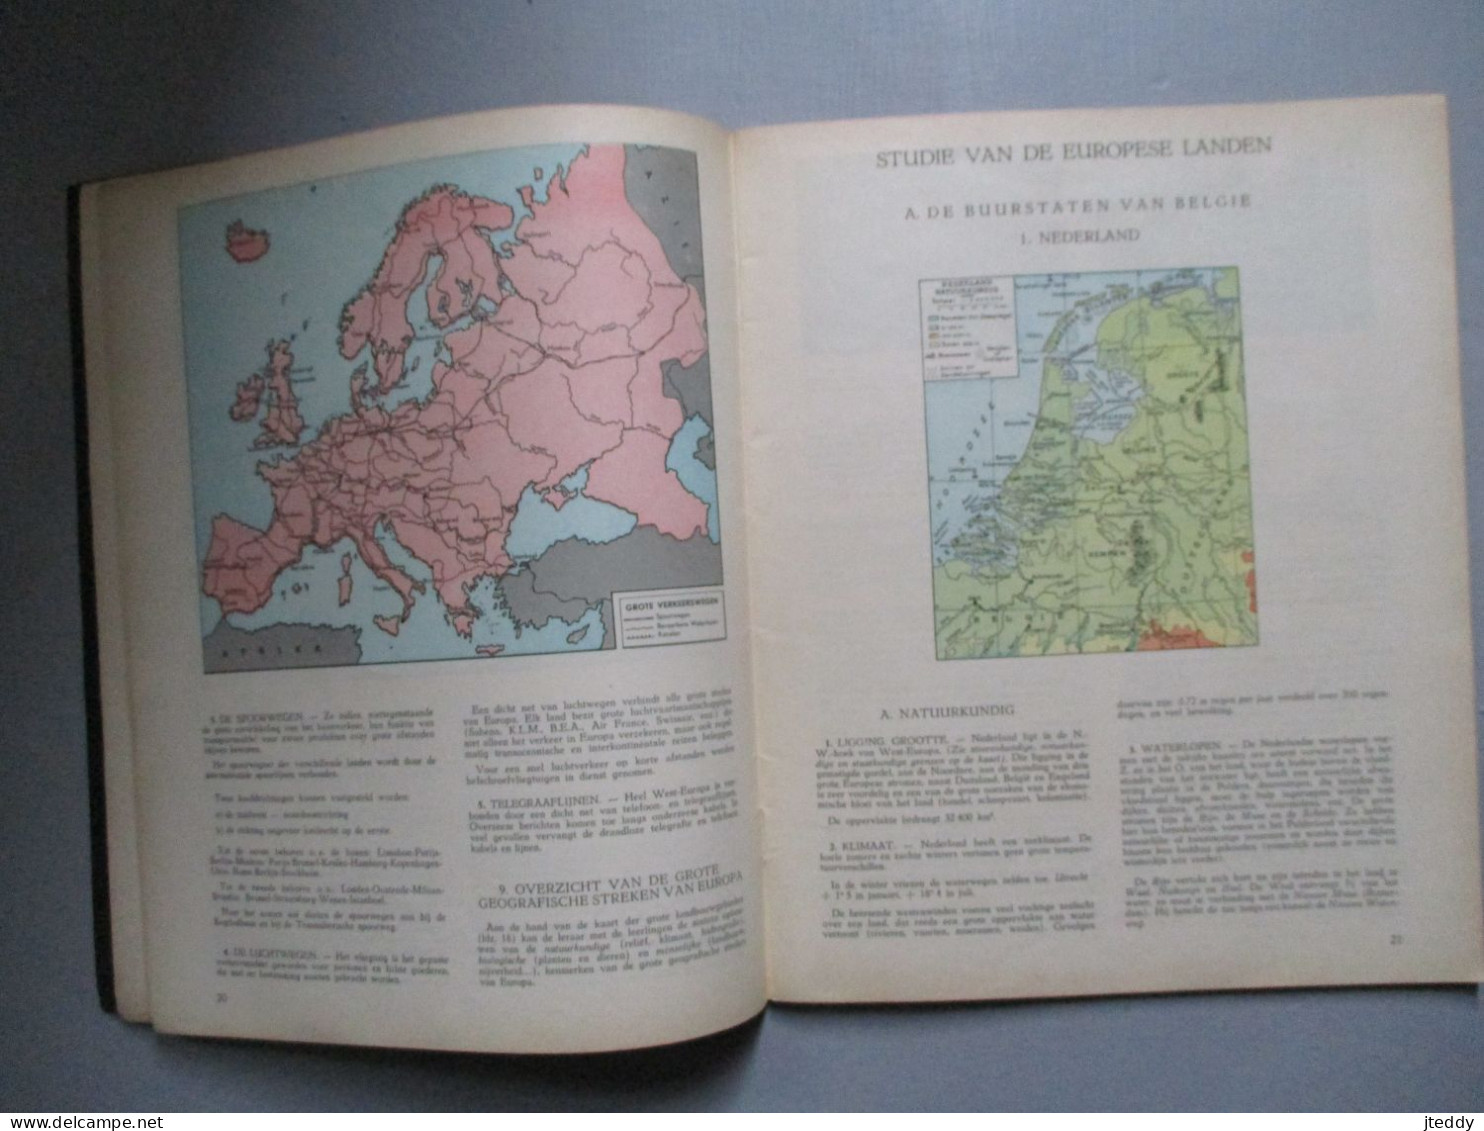 OUD  Boek  Aardrijkskunde   ATLAS  ---LEERBOEK  Europa - Schulbücher